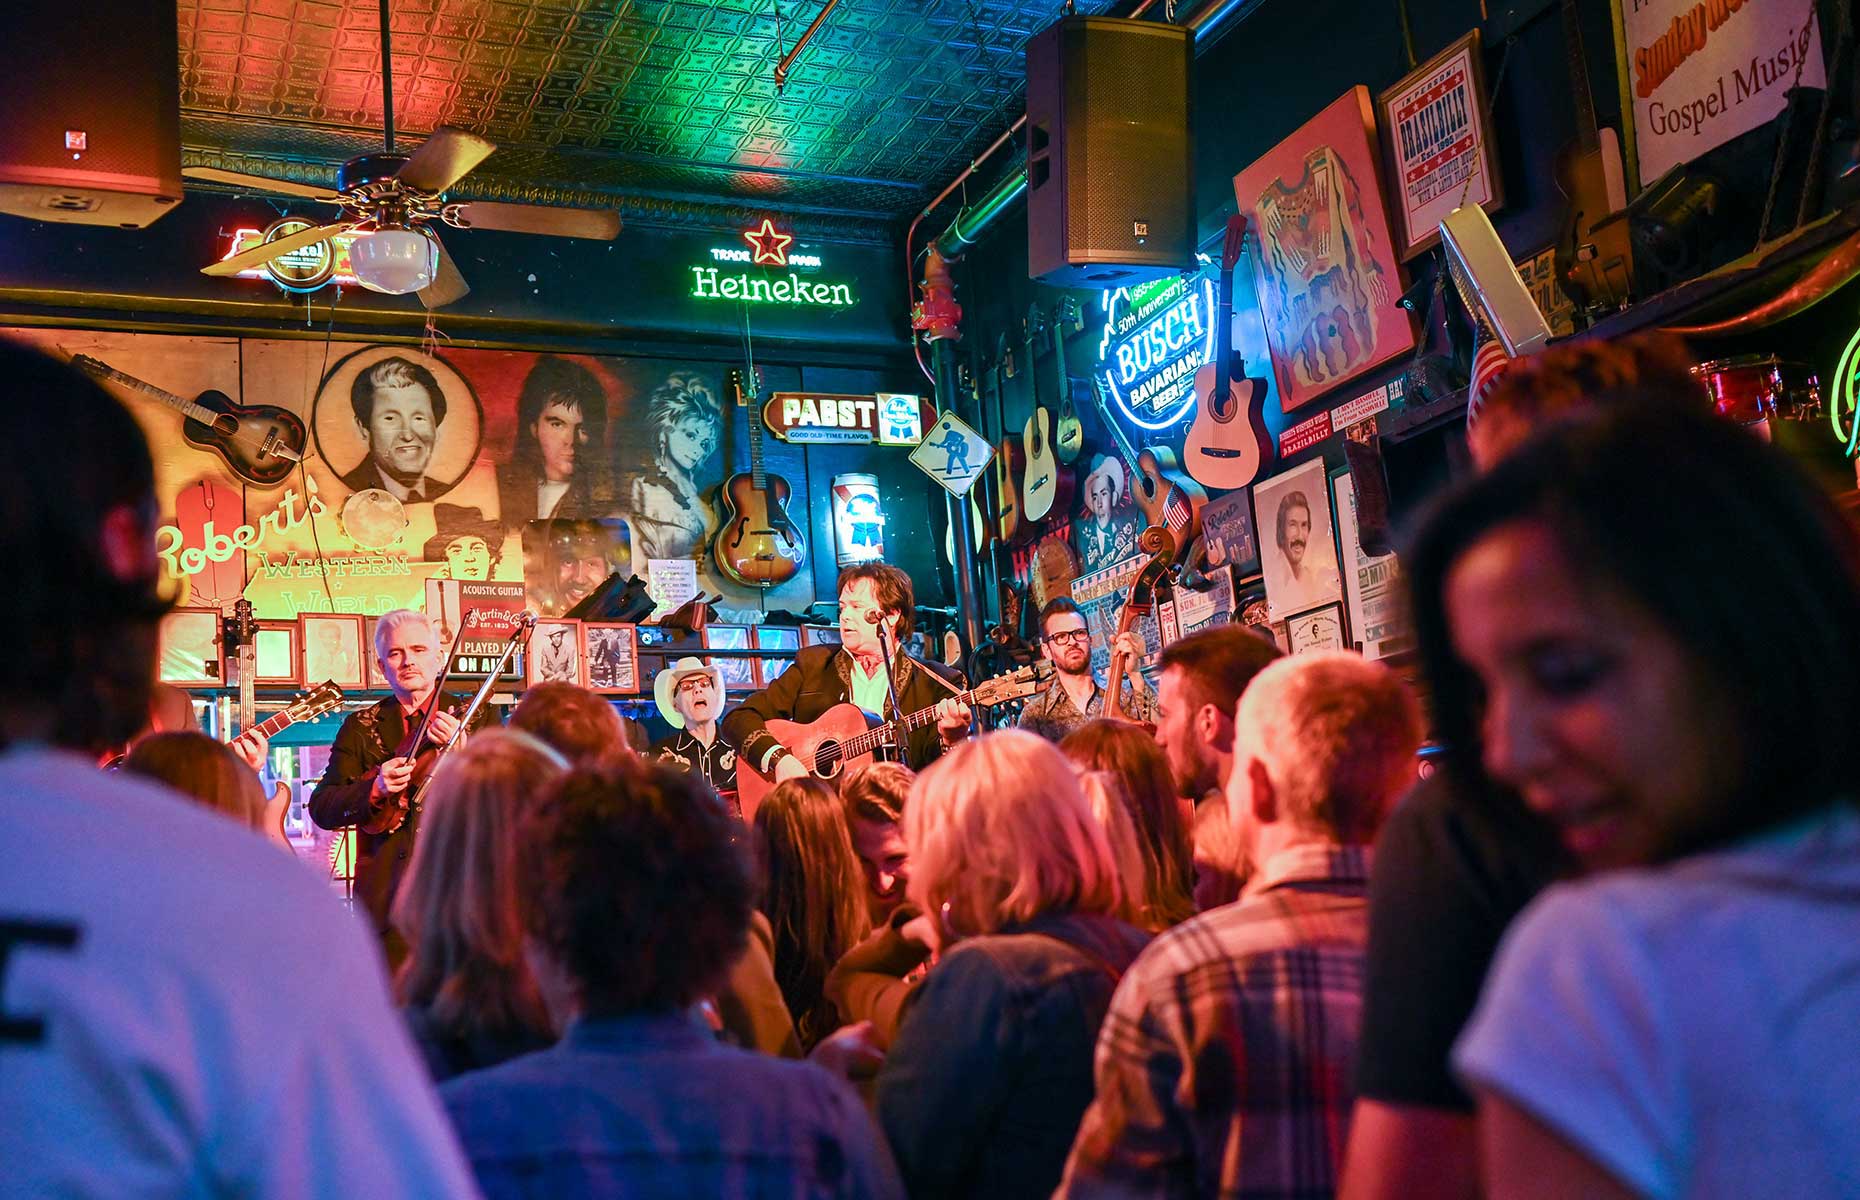 Downtown Nashville (Image credit: Rolf_52/Shutterstock)